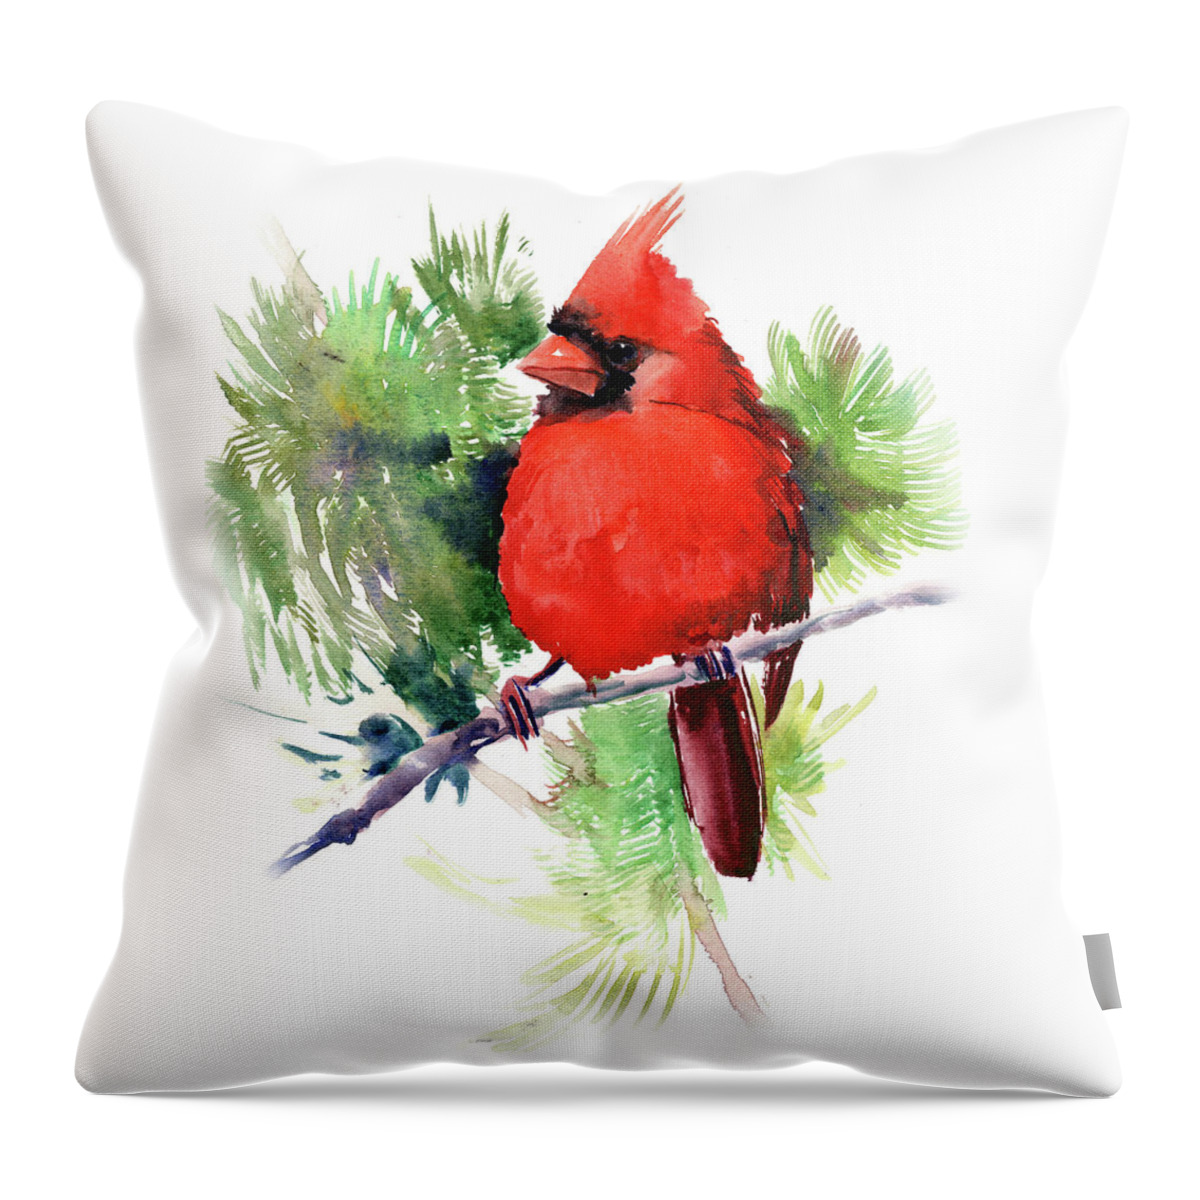 Cardinal Bird Throw Pillow featuring the painting Red Cardinal Bird #1 by Suren Nersisyan